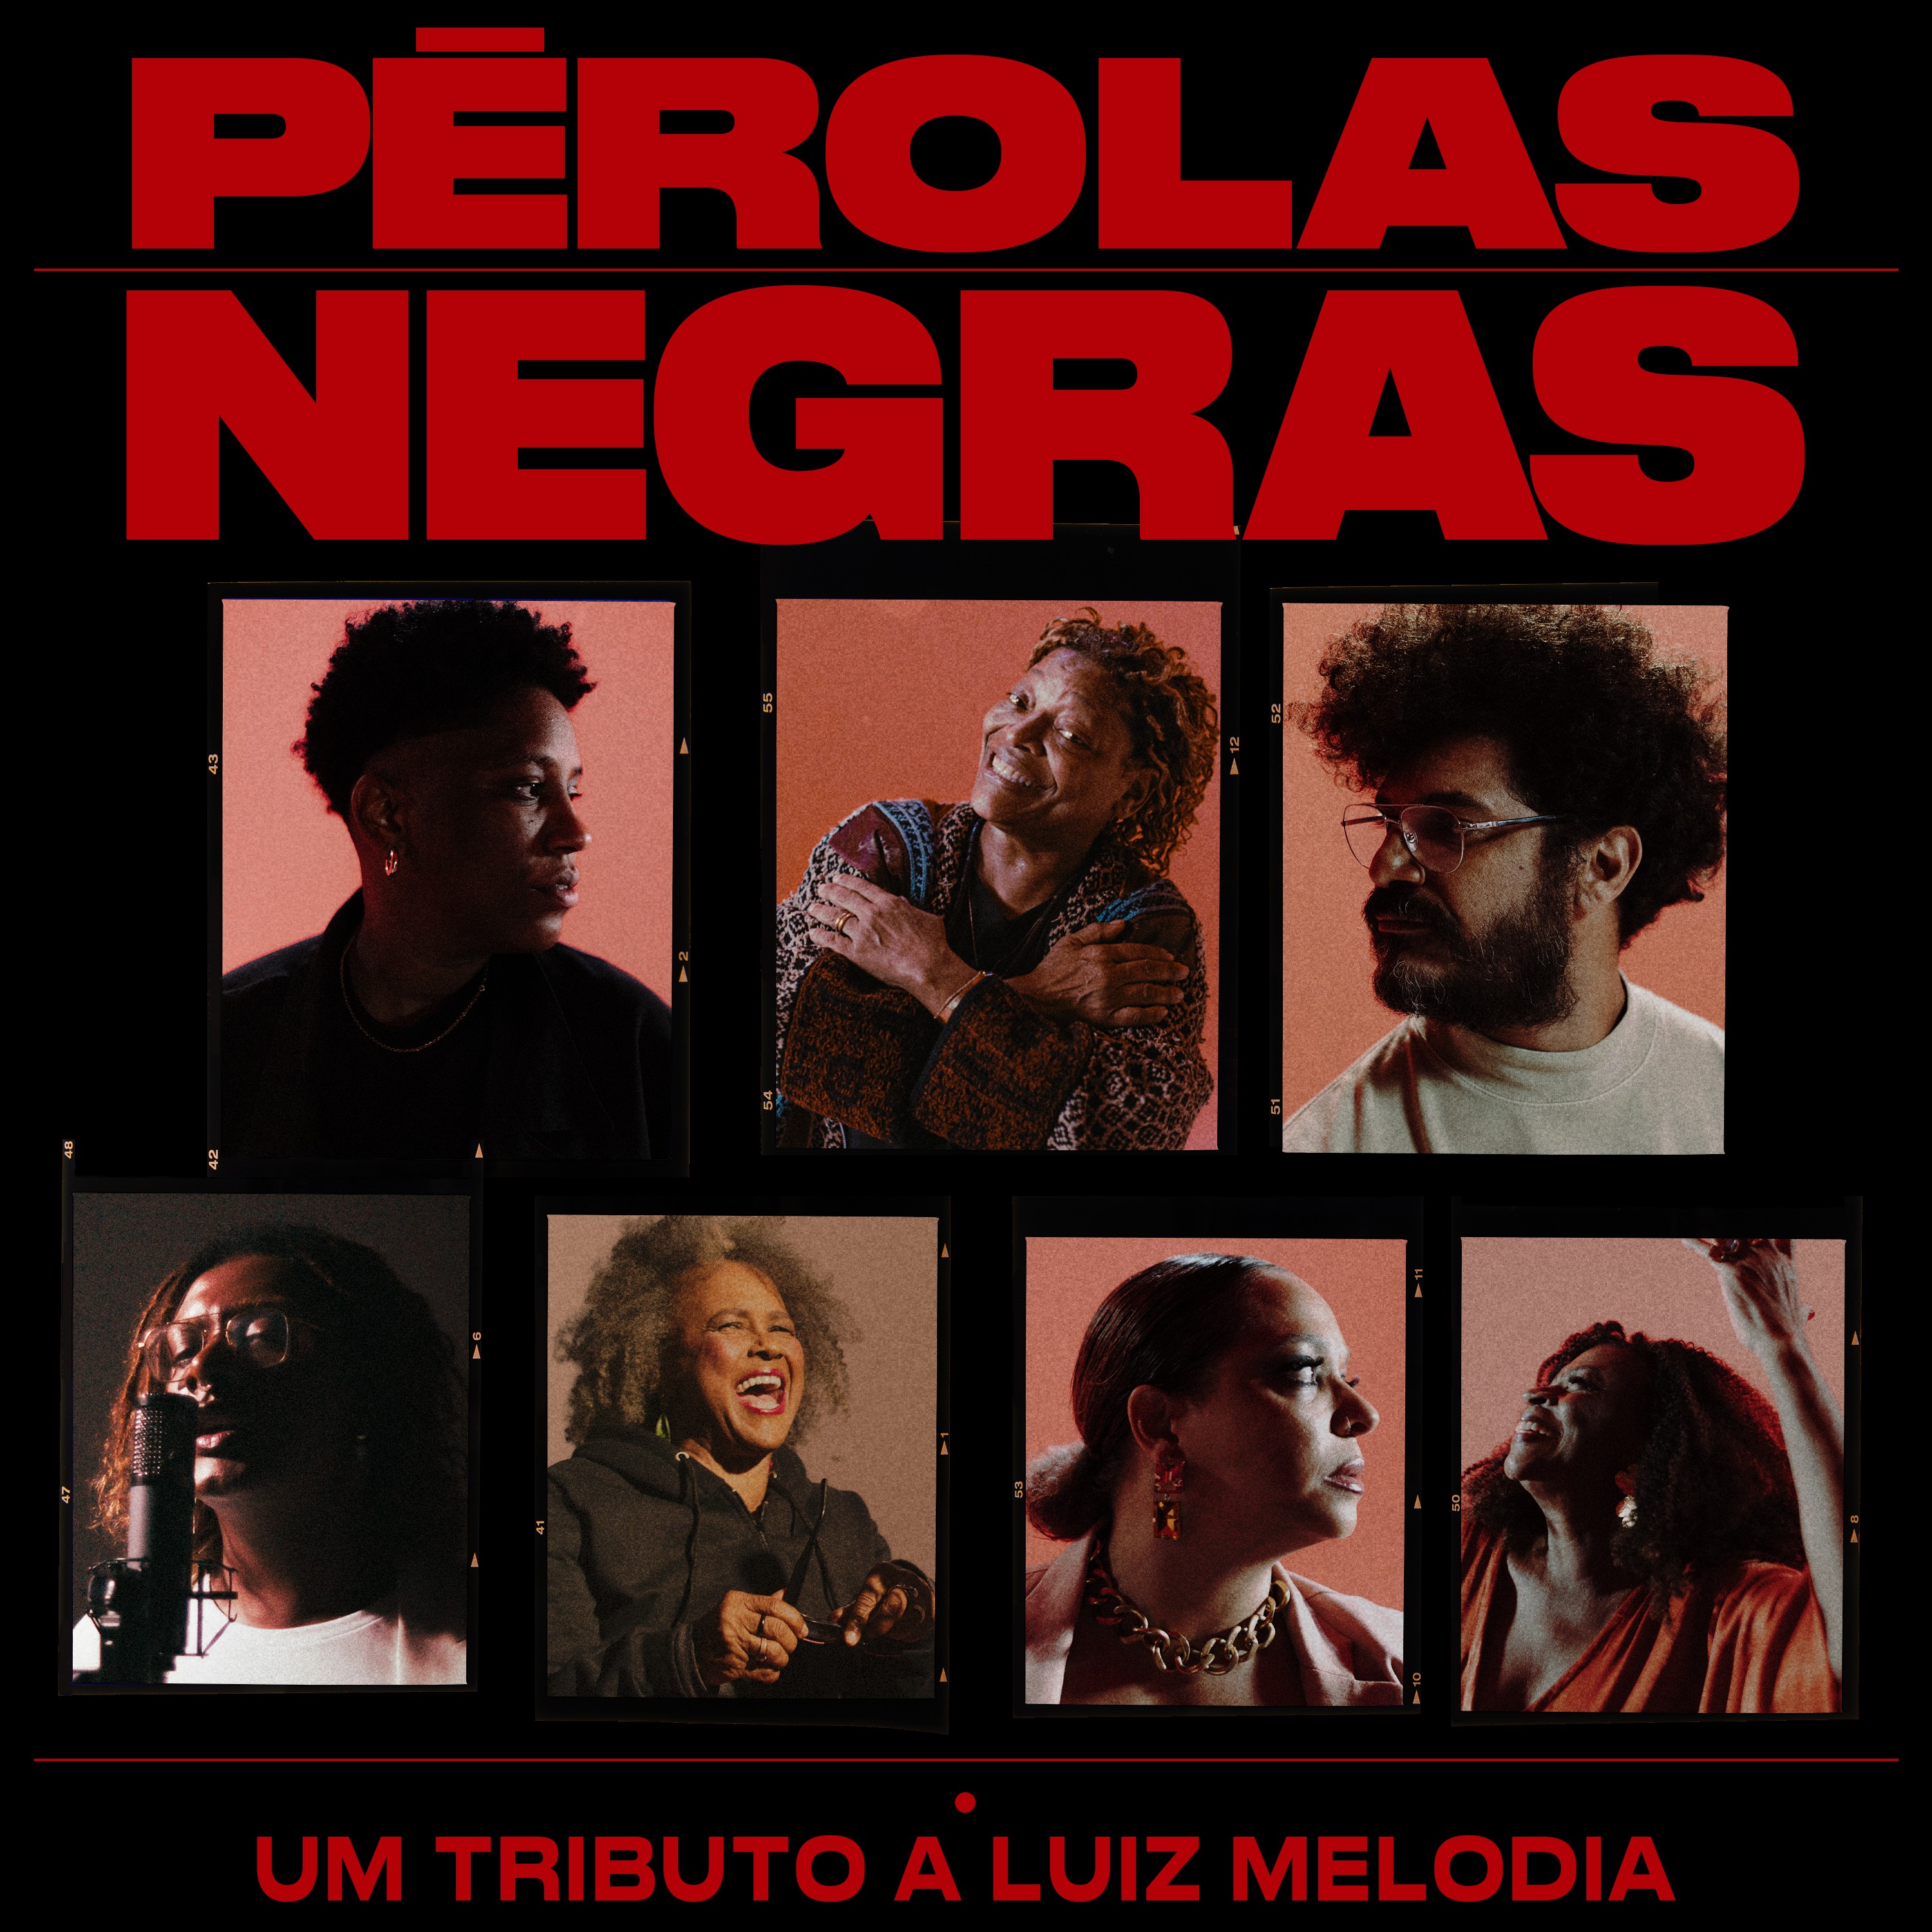 Tributo a Luiz Melodia, o EP 'Pérolas negras' reluz, mesmo sem alcançar o brilho do emblemático álbum de 1973